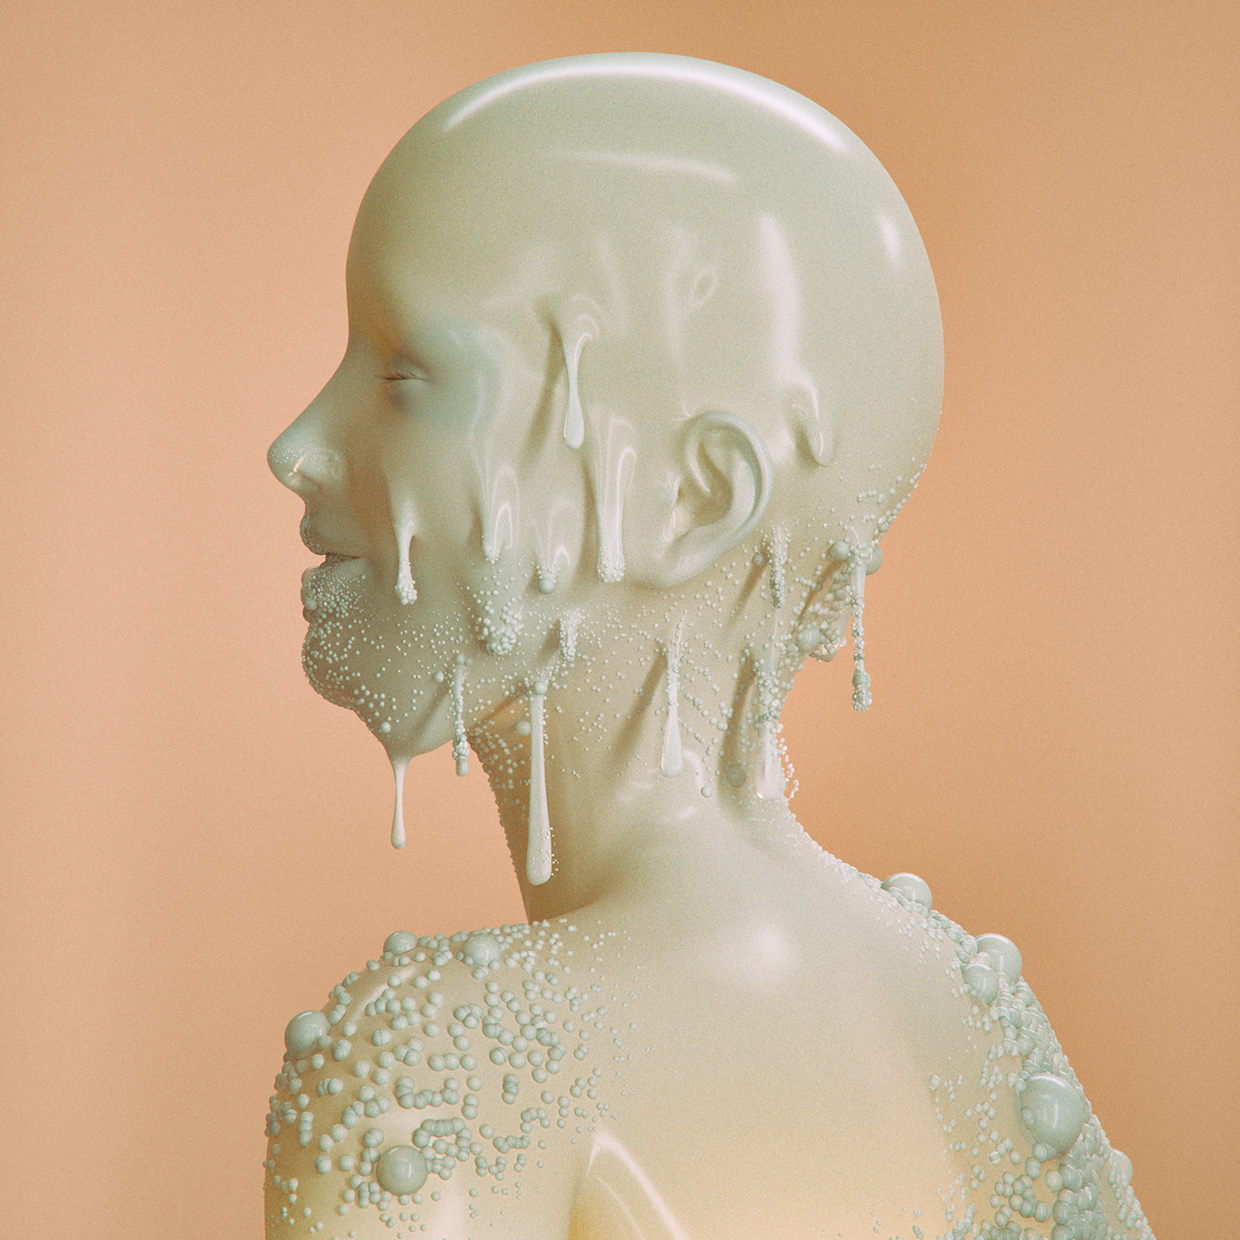 L'art digital 3D de Mike Wikerman aka Beeple